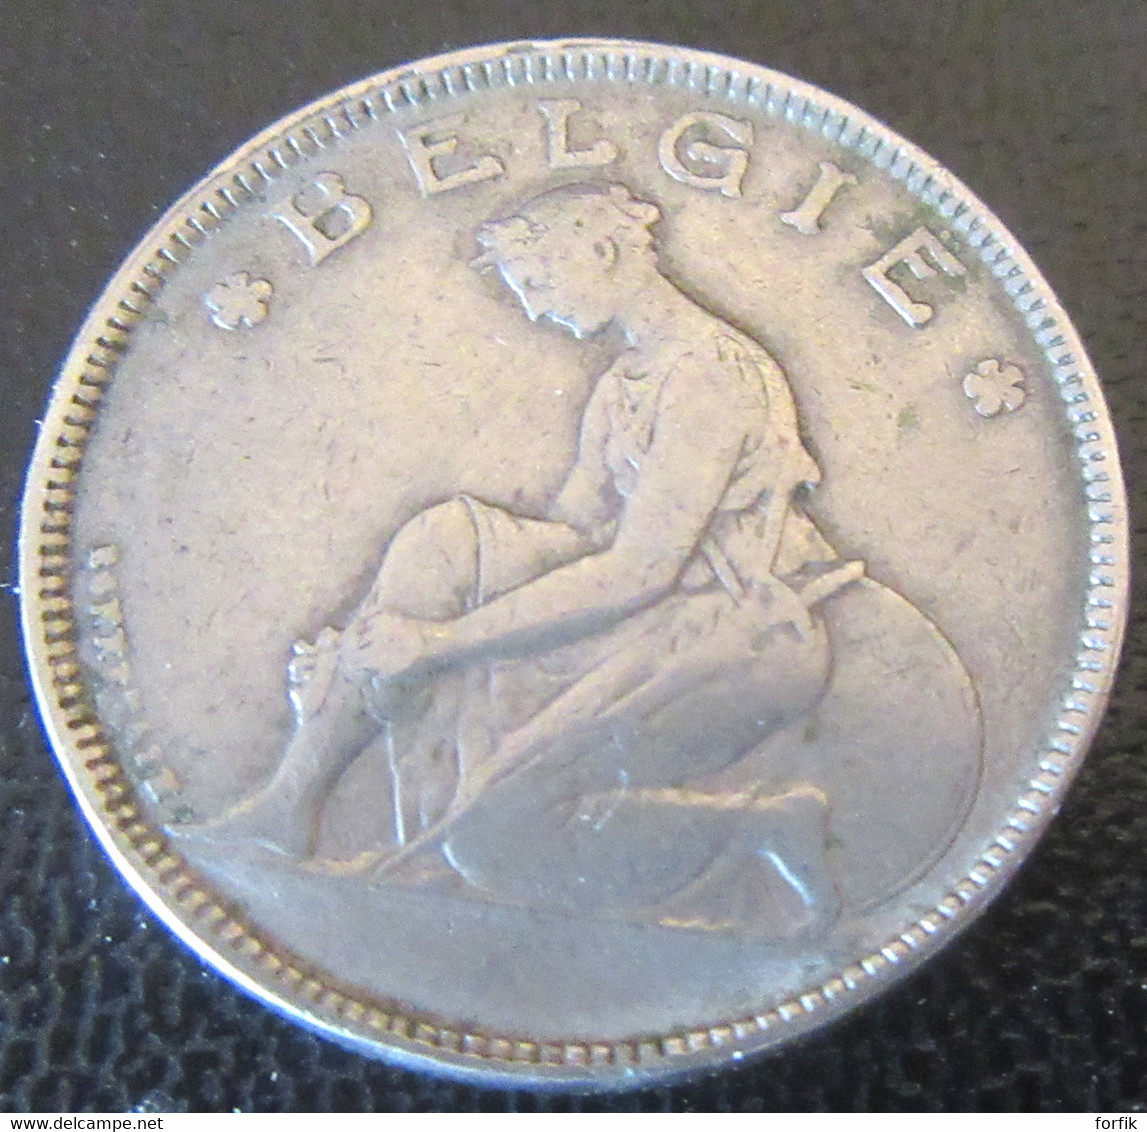 Belgique - Monnaie Bon Pour 2 Francs (Goed Voor 2 F) 1923 - Légende En Néerlandais - 2 Franchi